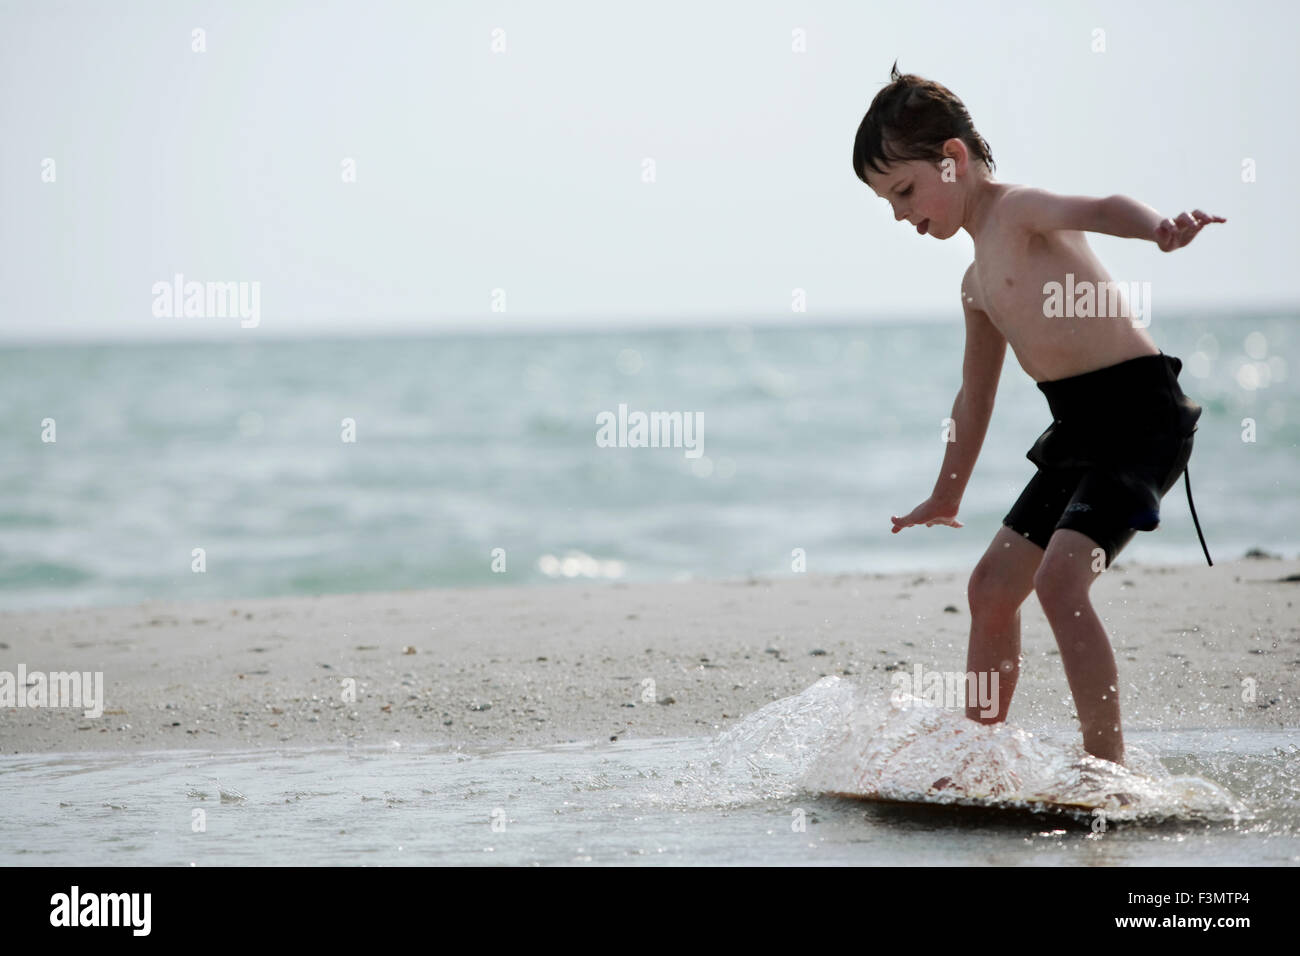 Ein kleiner Junge in einen Neoprenanzug surft auf seine Skim Board am Ufer. Stockfoto